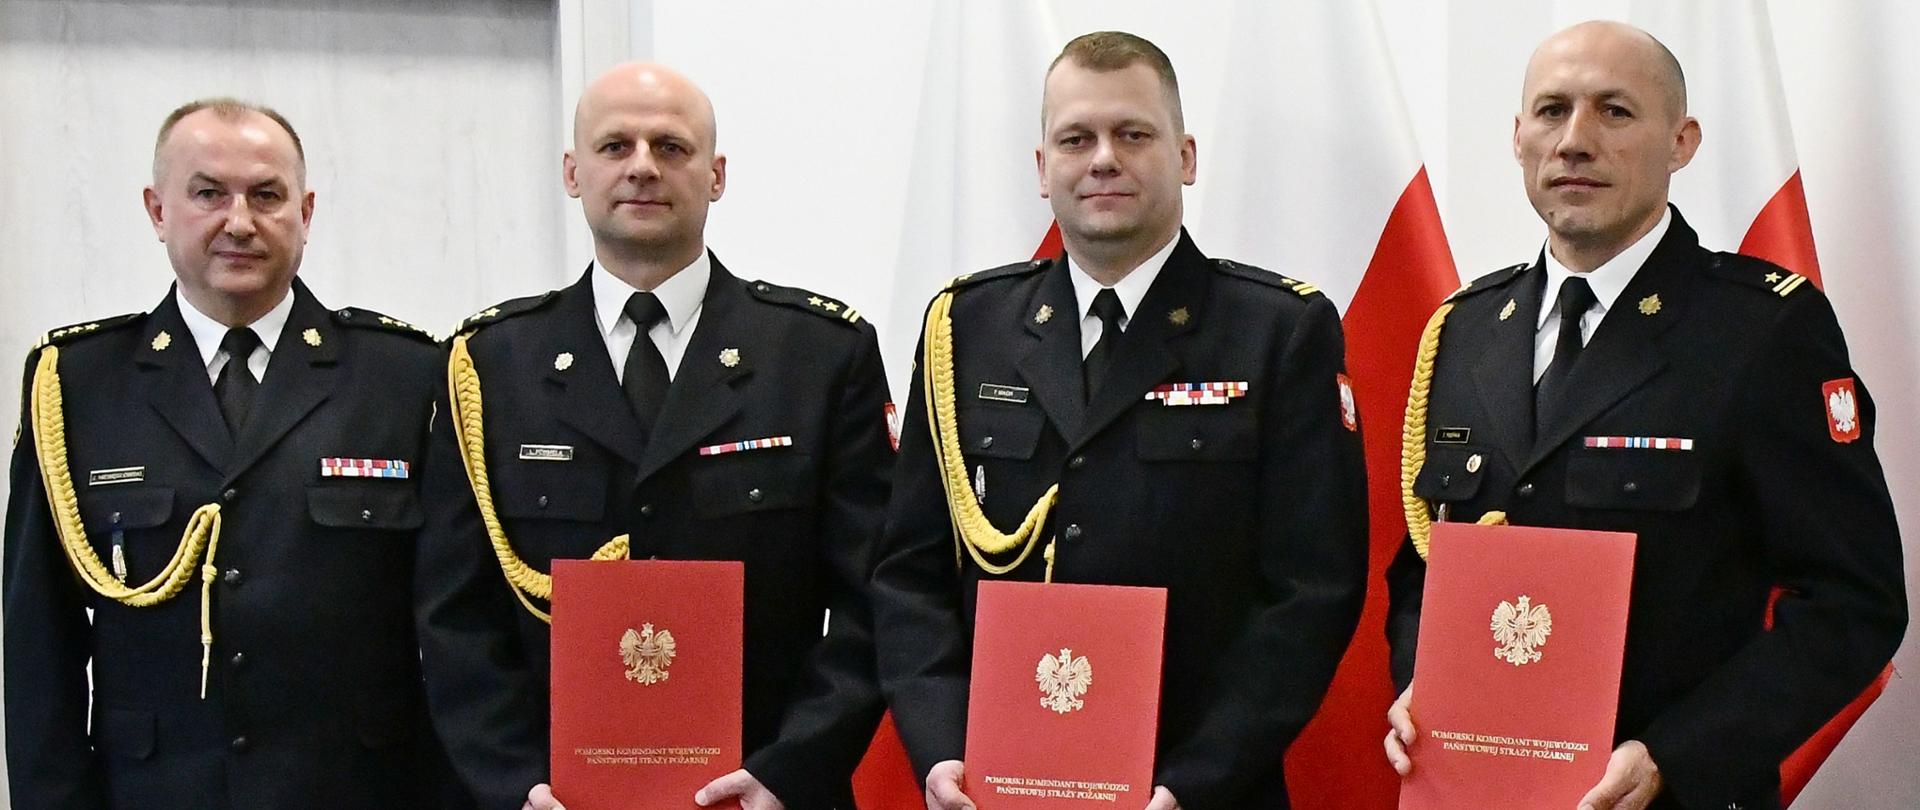 Czterech strażaków Państwowej Straży Pożarnej w mundurach wyjściowych ze sznurem stoi obok siebie trzech strażaków trzyma czerwone teczki za nimi ustawione są trzy flagi Polski oraz znajdują się drzwi. 